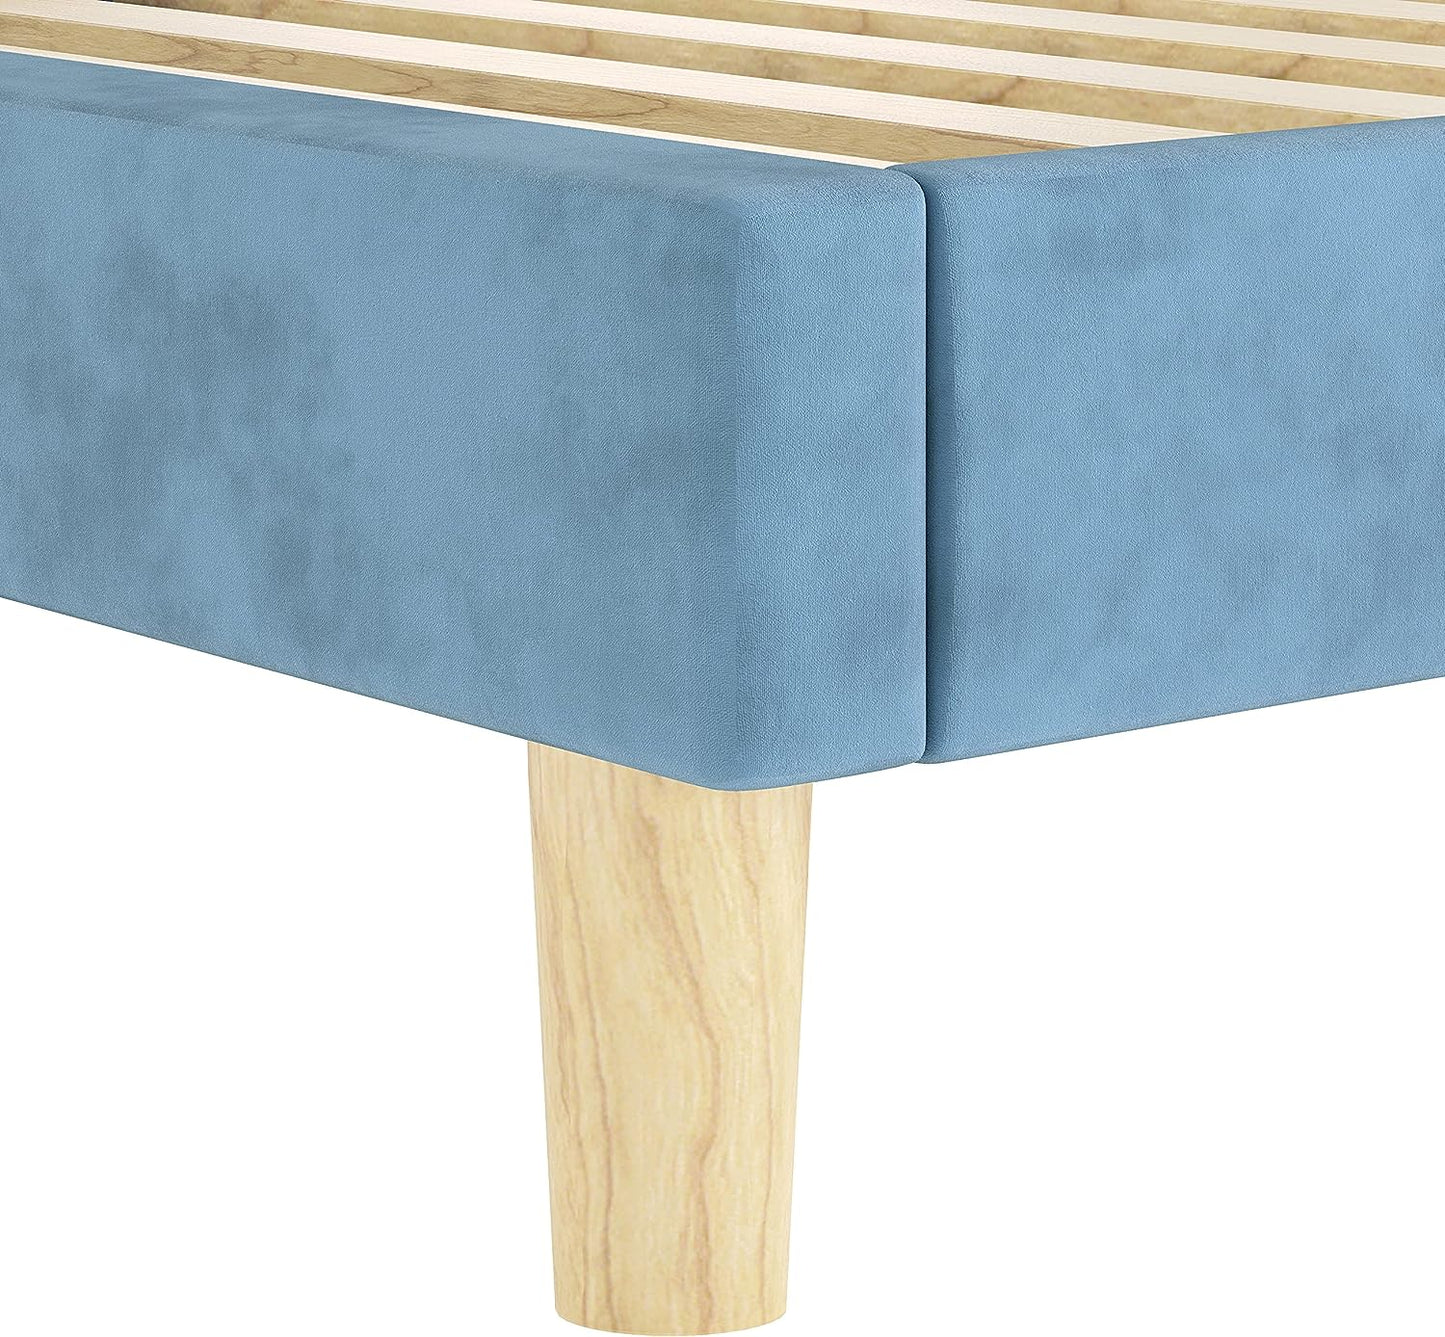 LIKIMIO Velvet Upholstered Platform Bed Light Blue